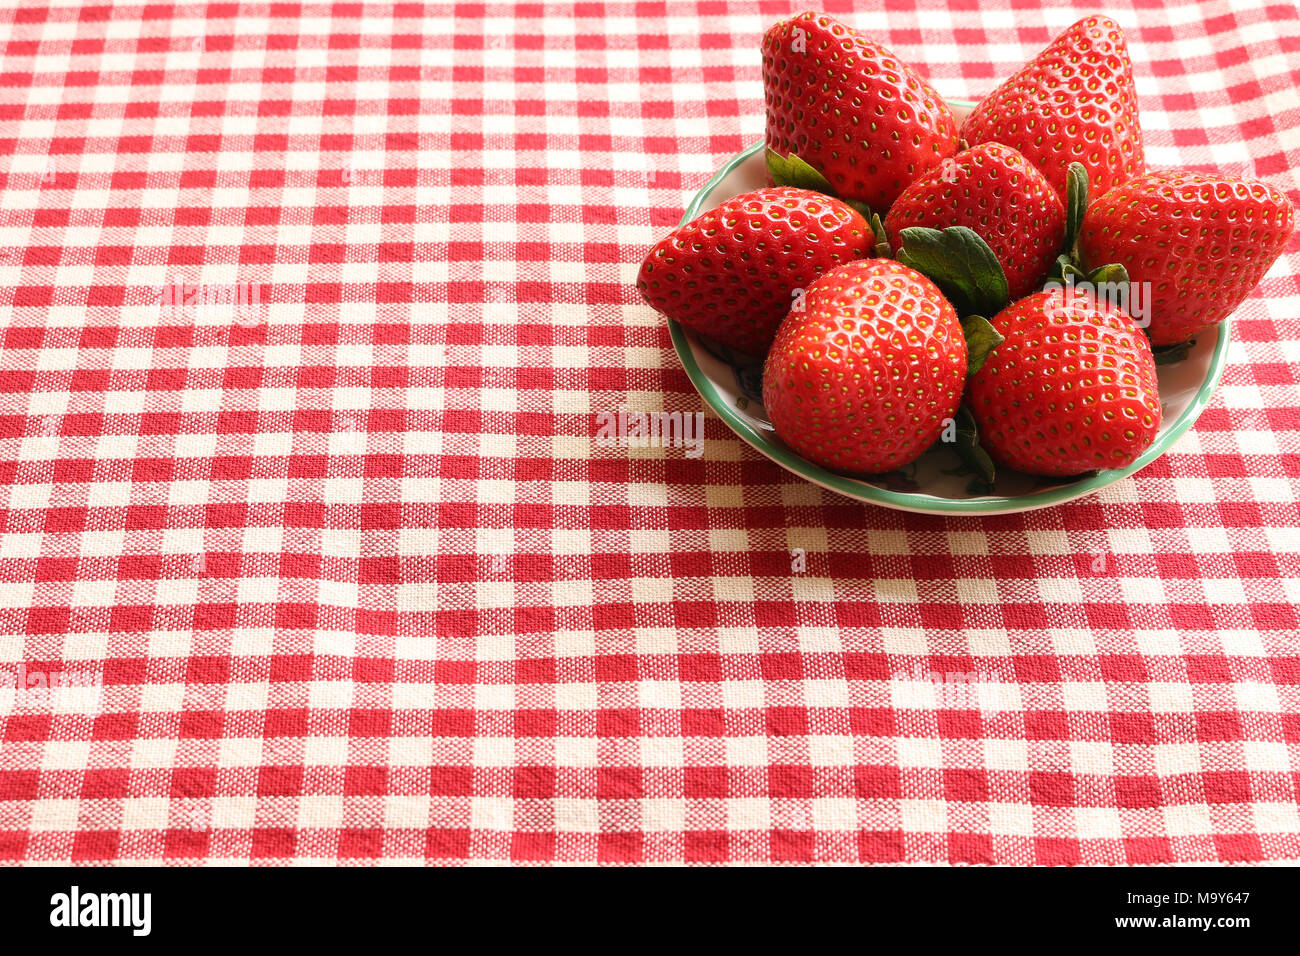 Eine Schüssel Erdbeeren auf rotem gingham Tischdecke Stockfoto